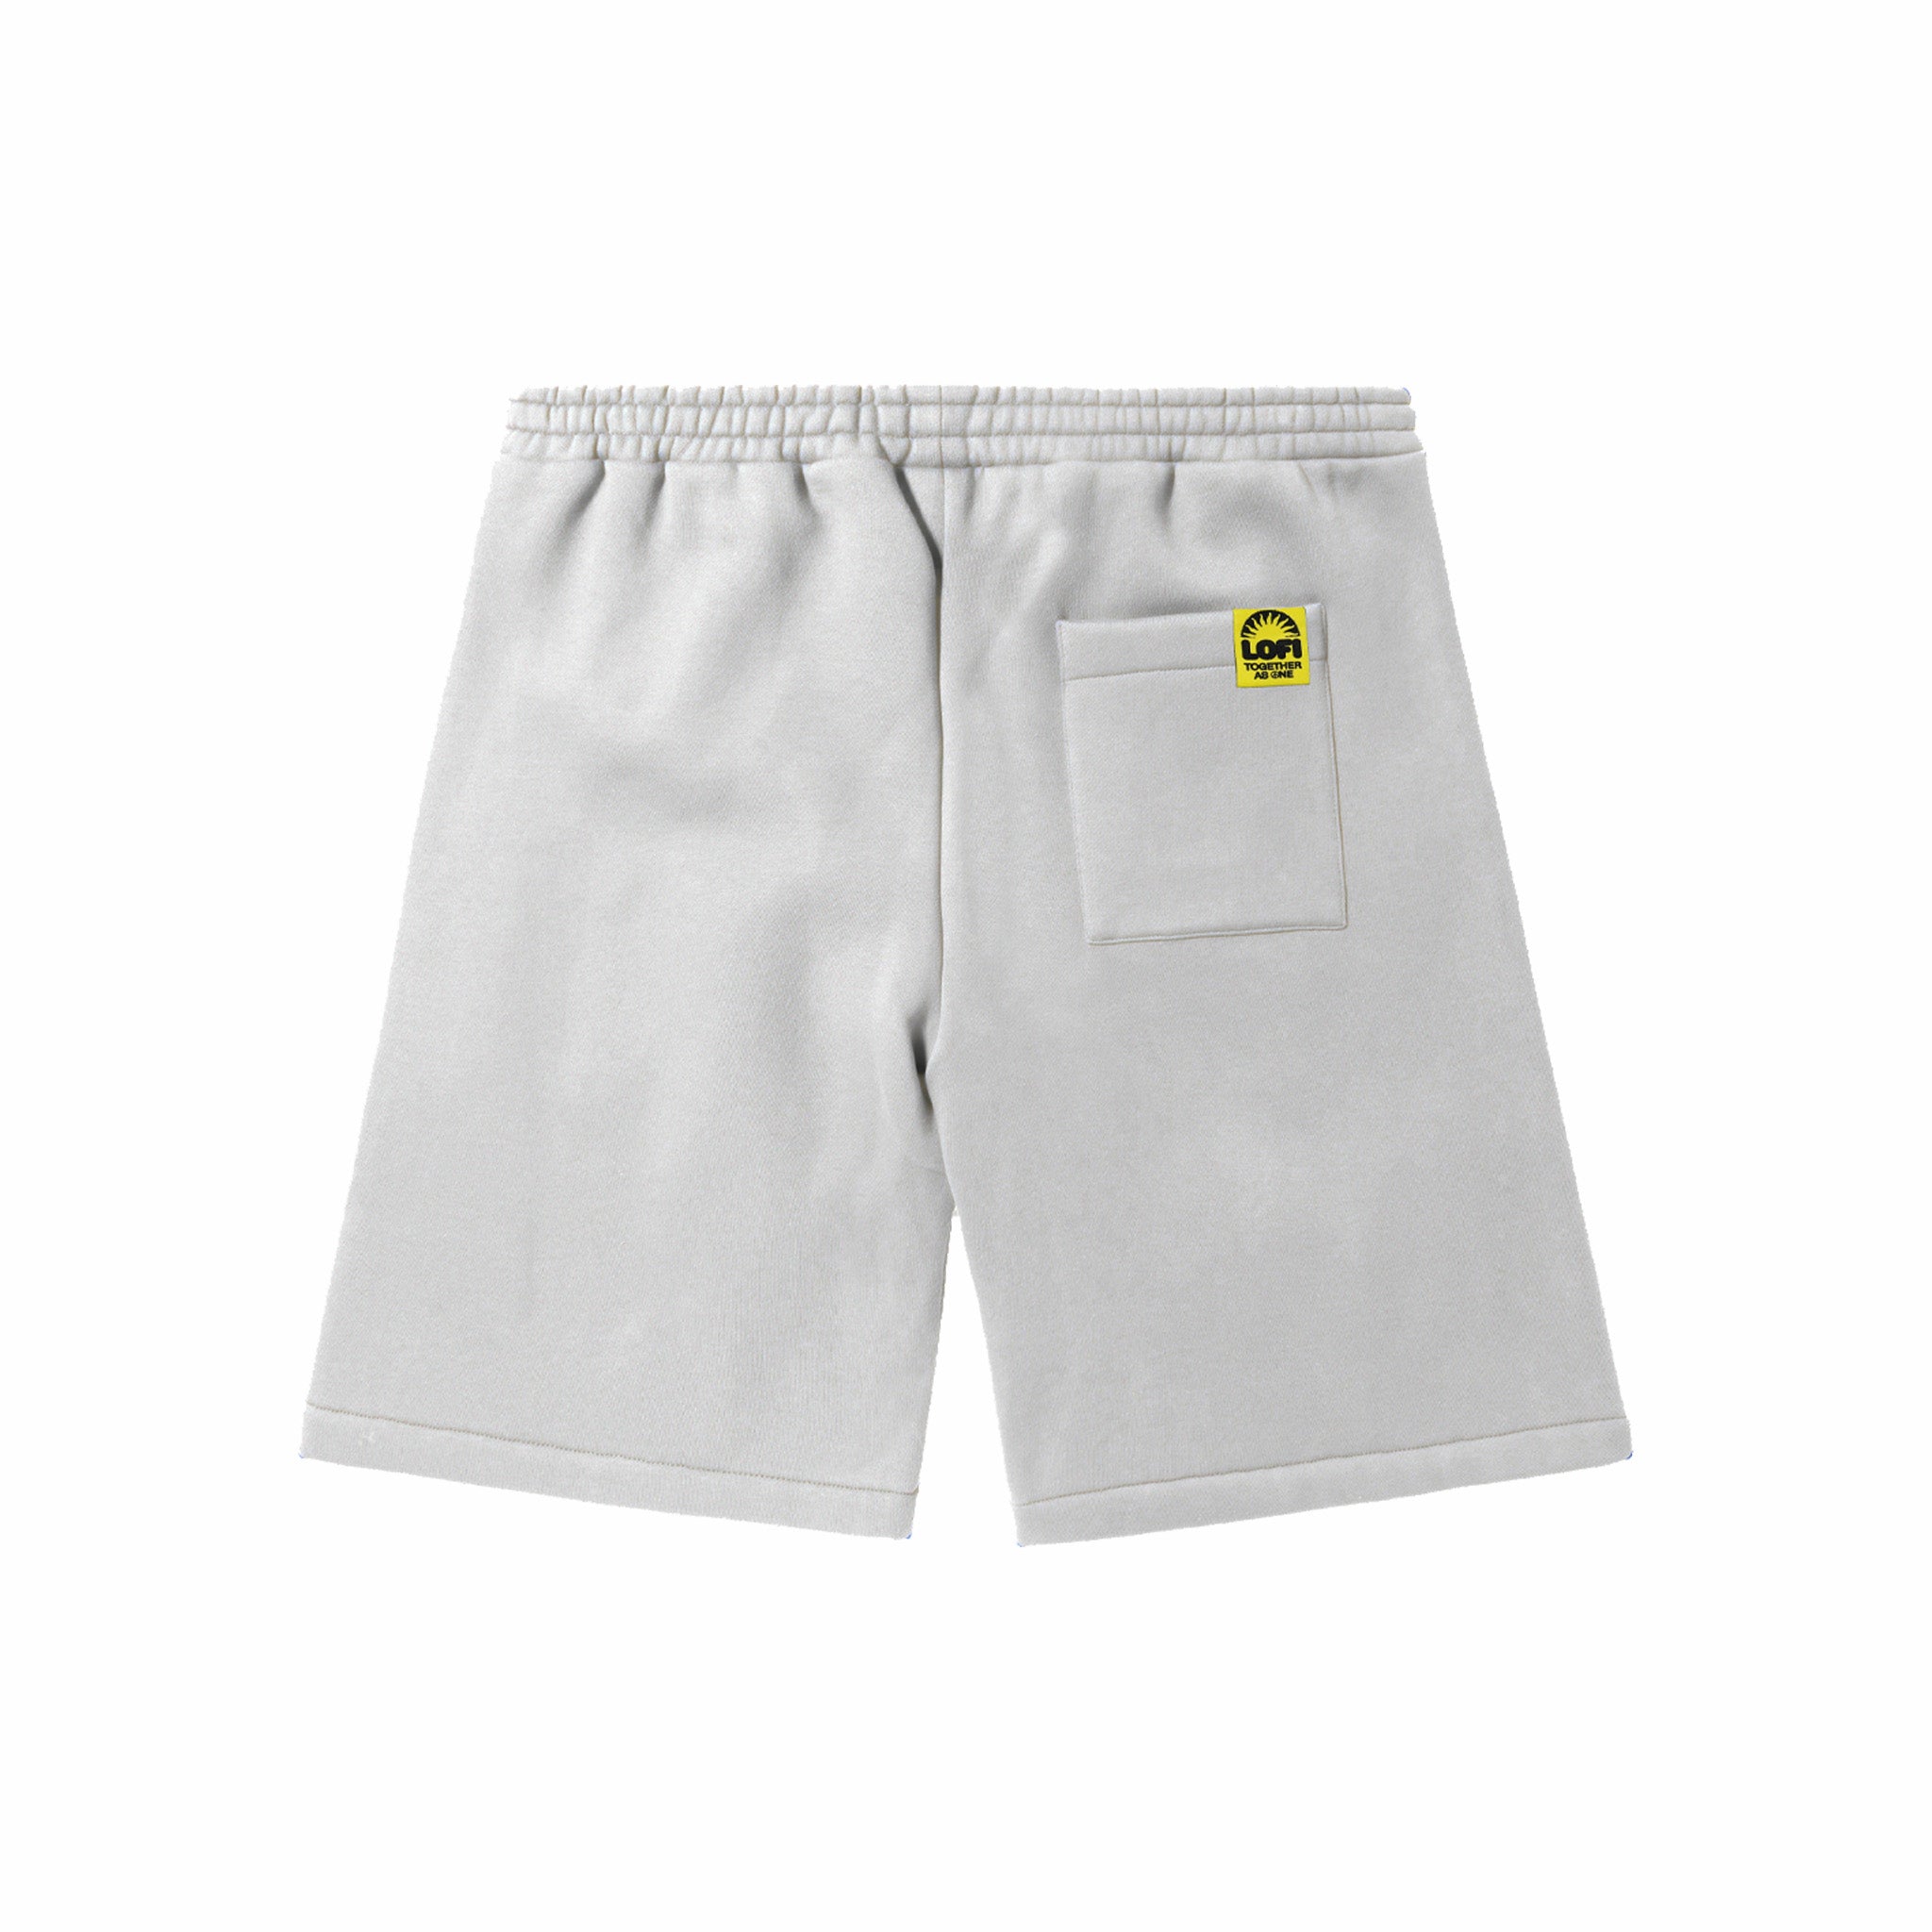 Lo-Fi Basic Parts Fleece Shorts (Cement) - August Shop